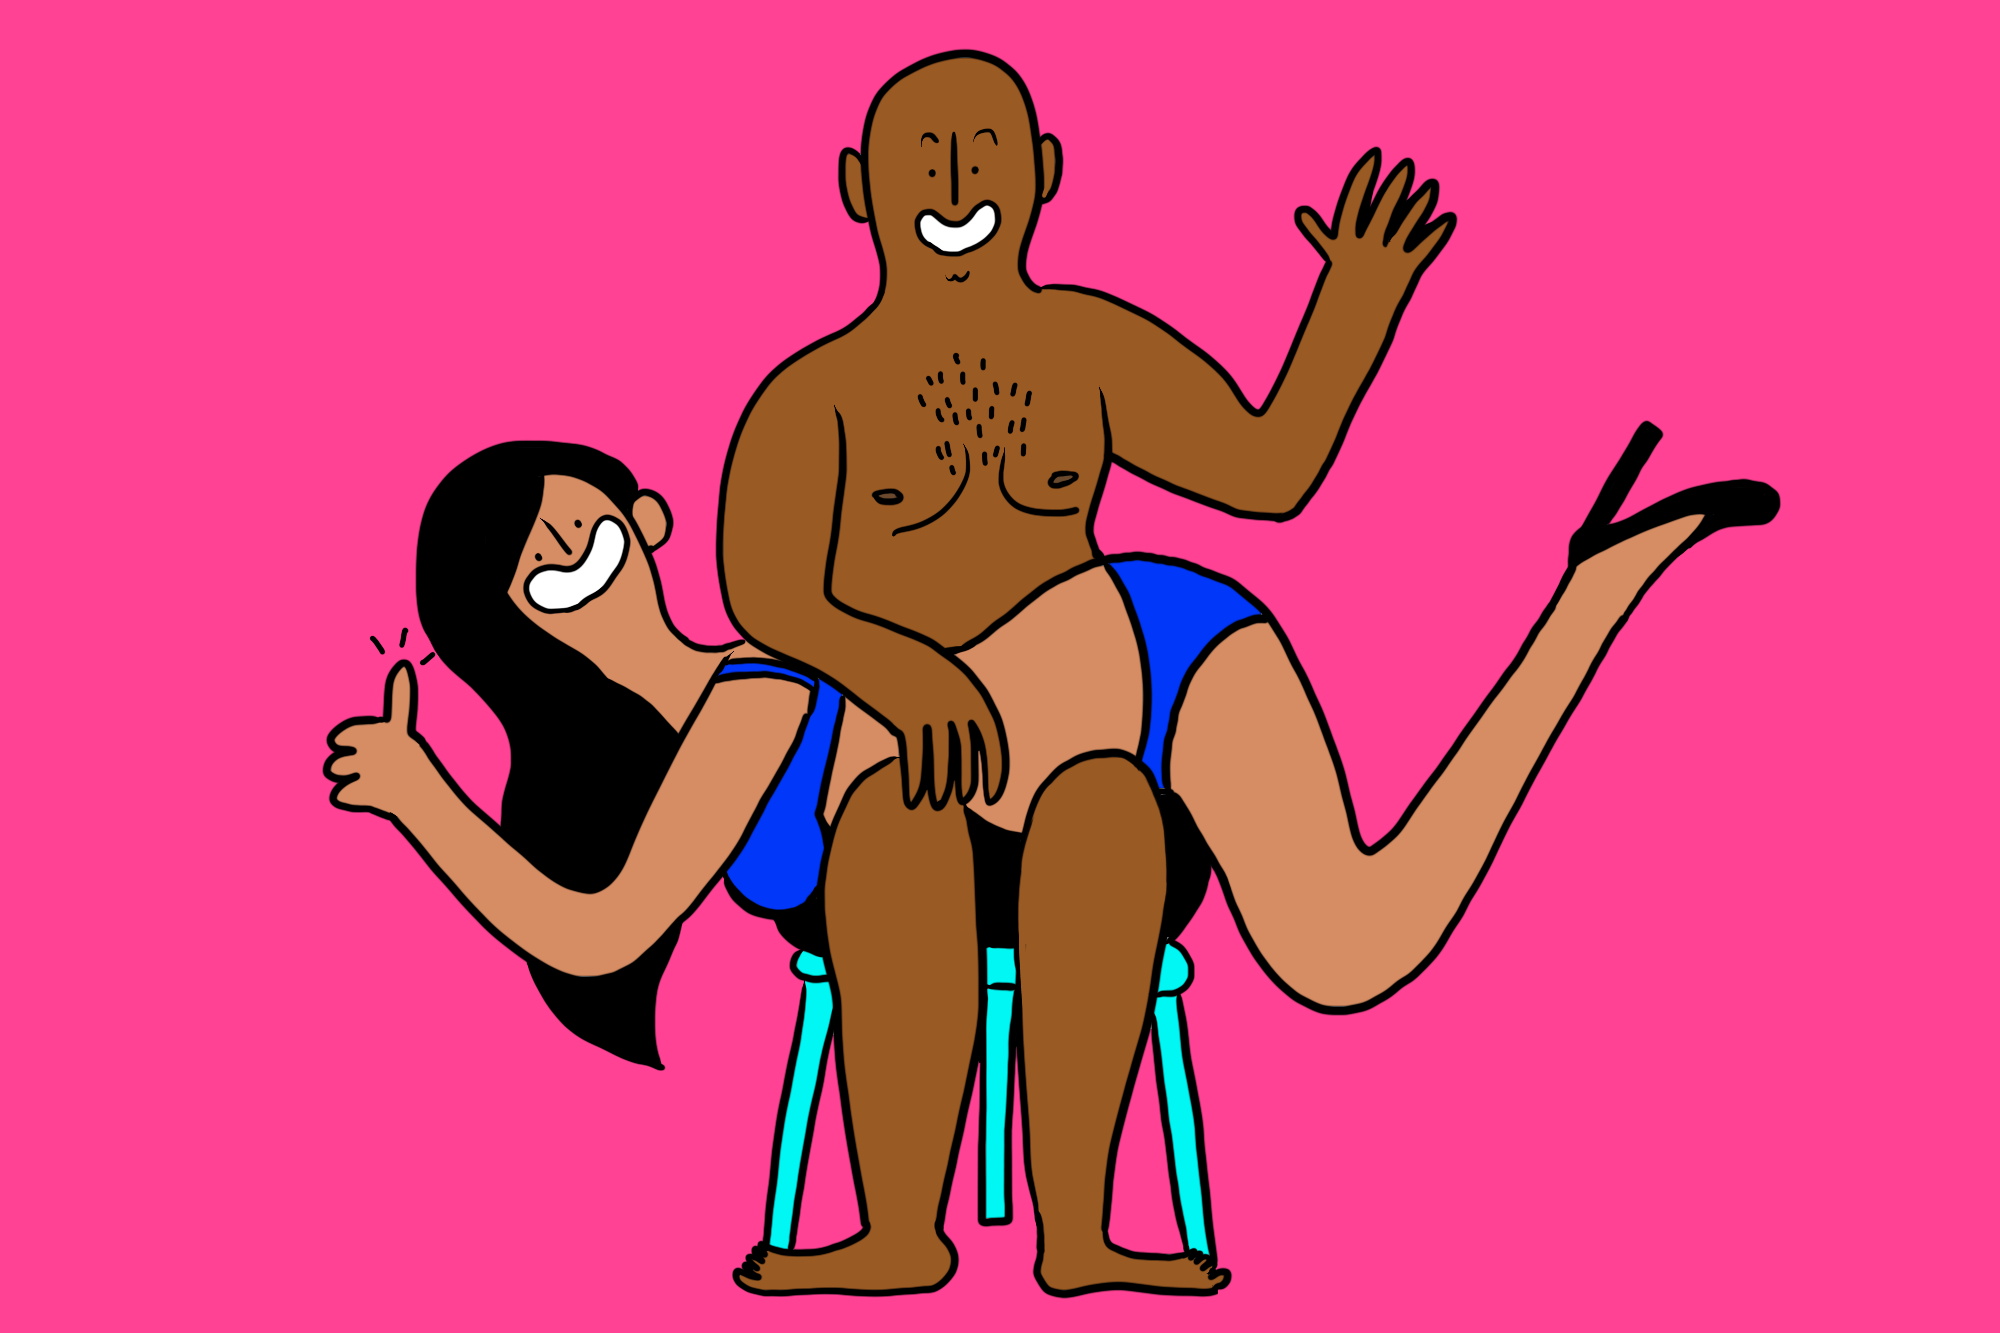 anthony latham add women spanking men photos photo